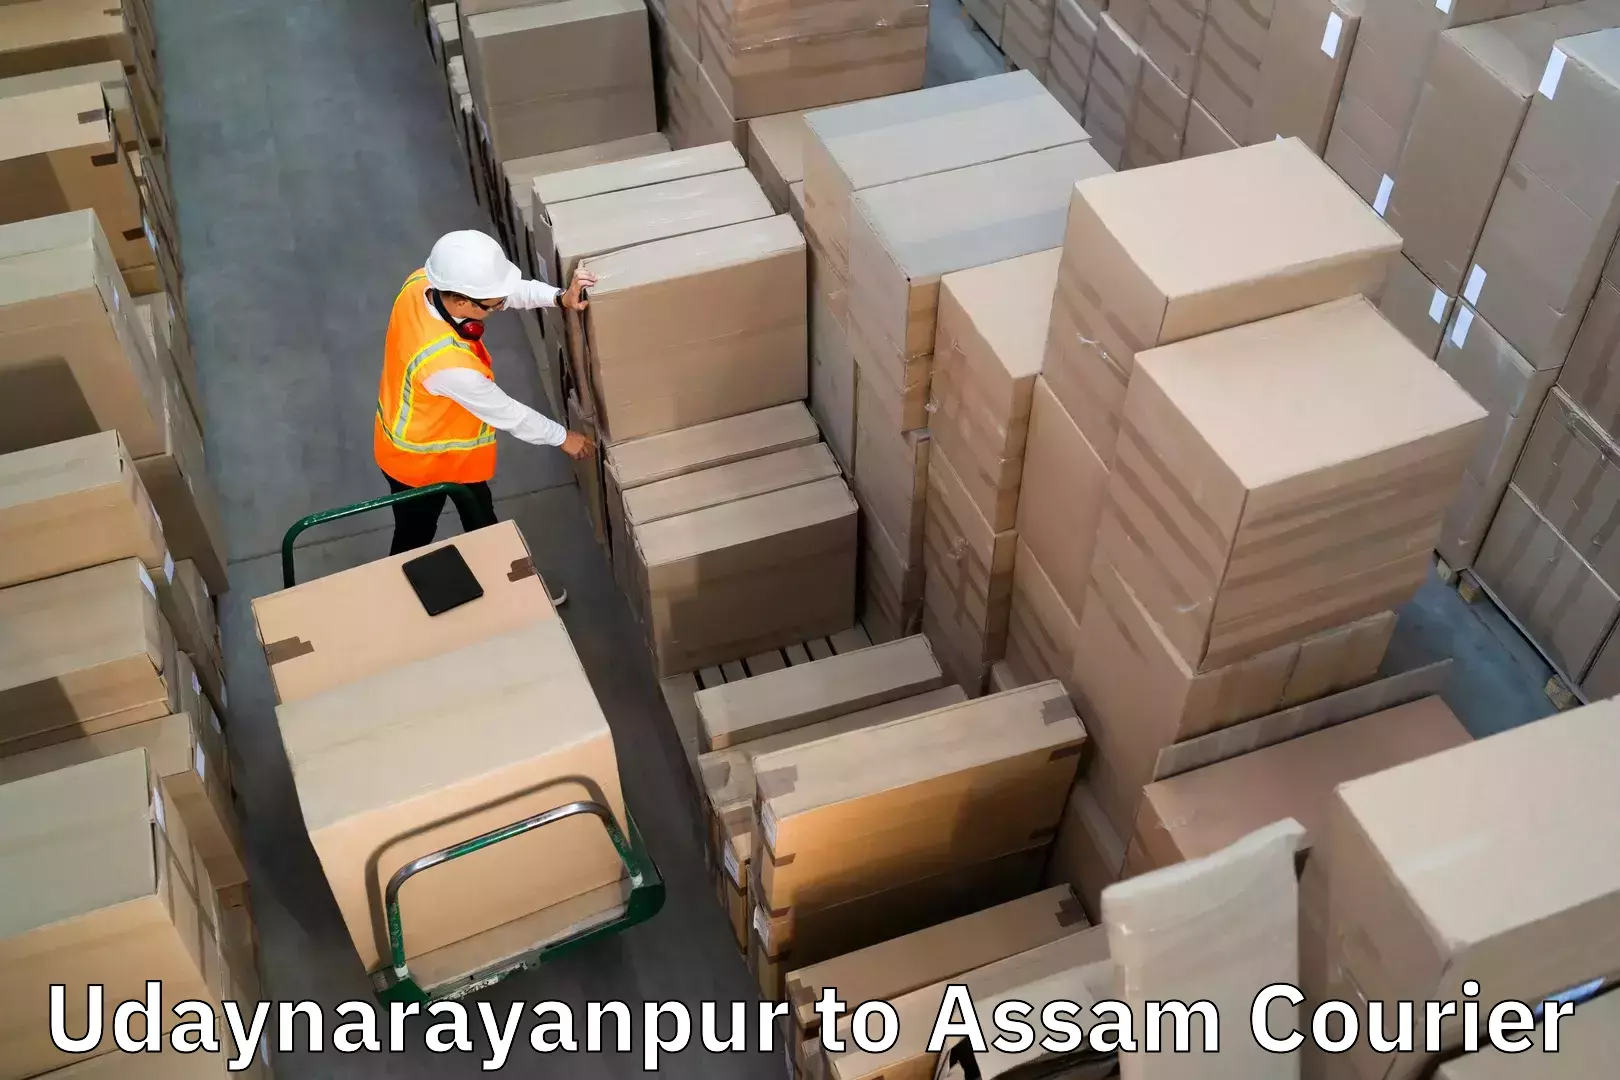 Baggage transport scheduler Udaynarayanpur to Nagaon